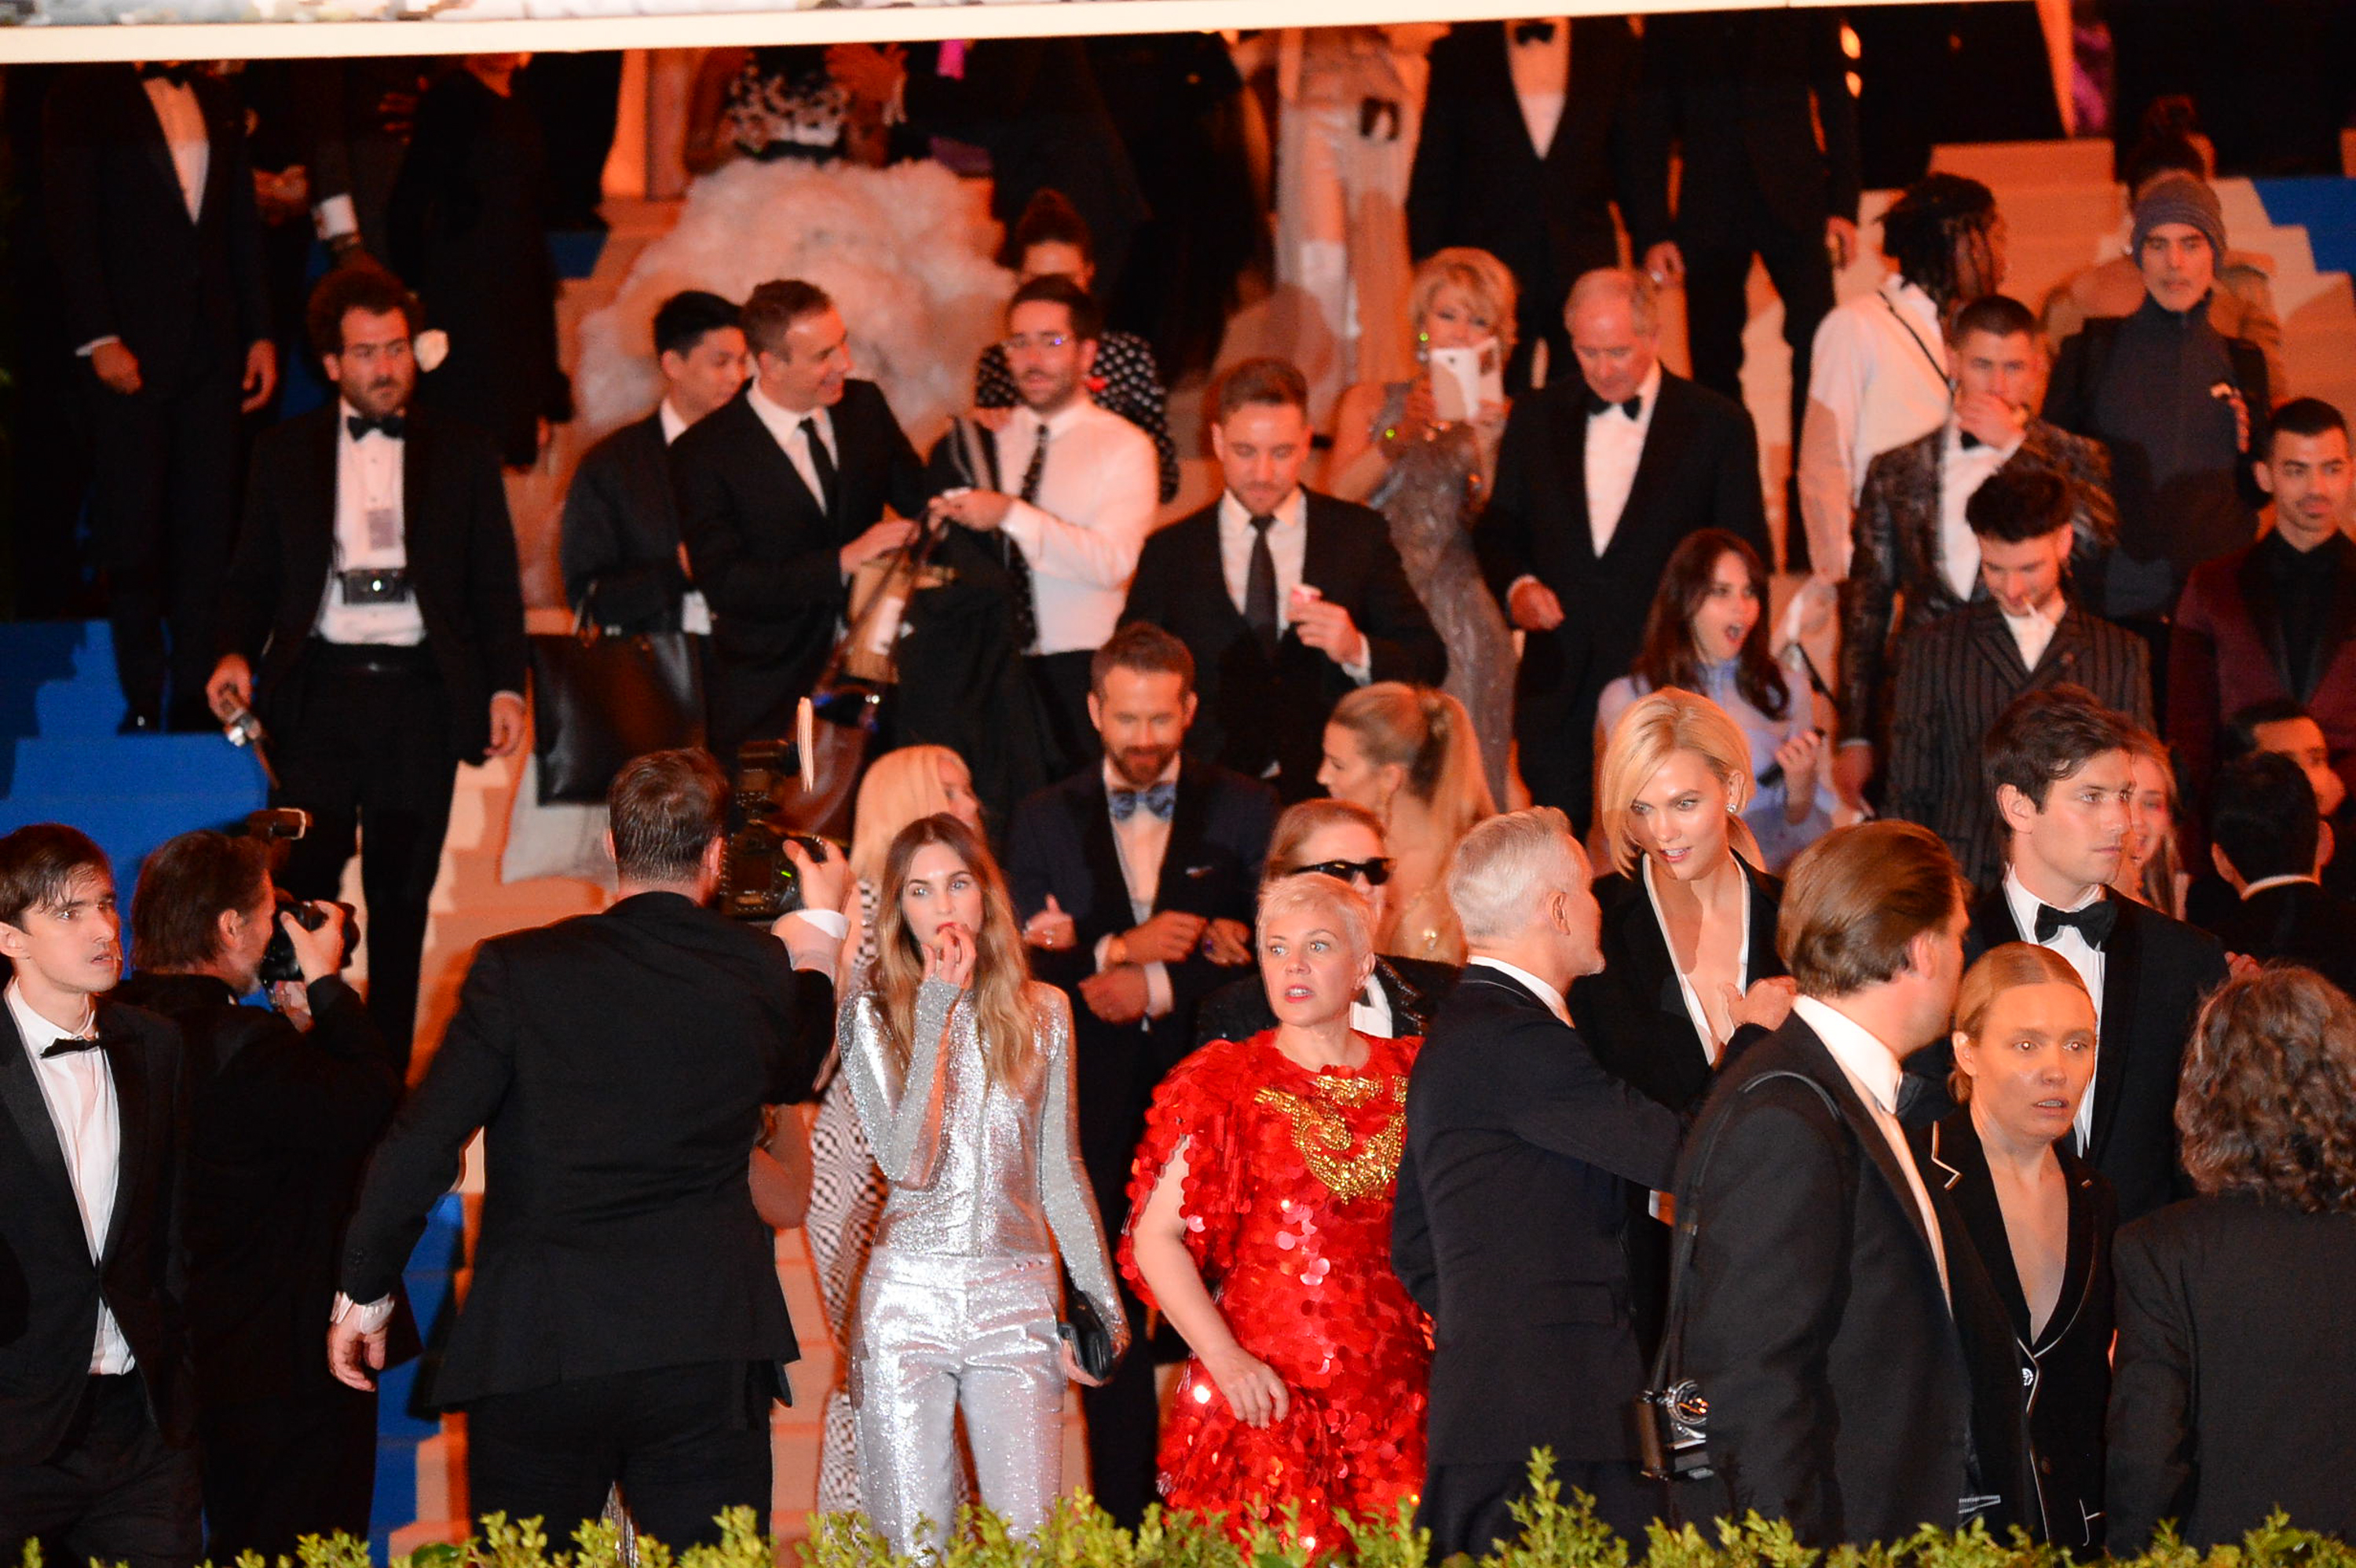 Une vue des invités sortant du gala du Met, le 1er mai 2017, à New York. | Source : Getty Images